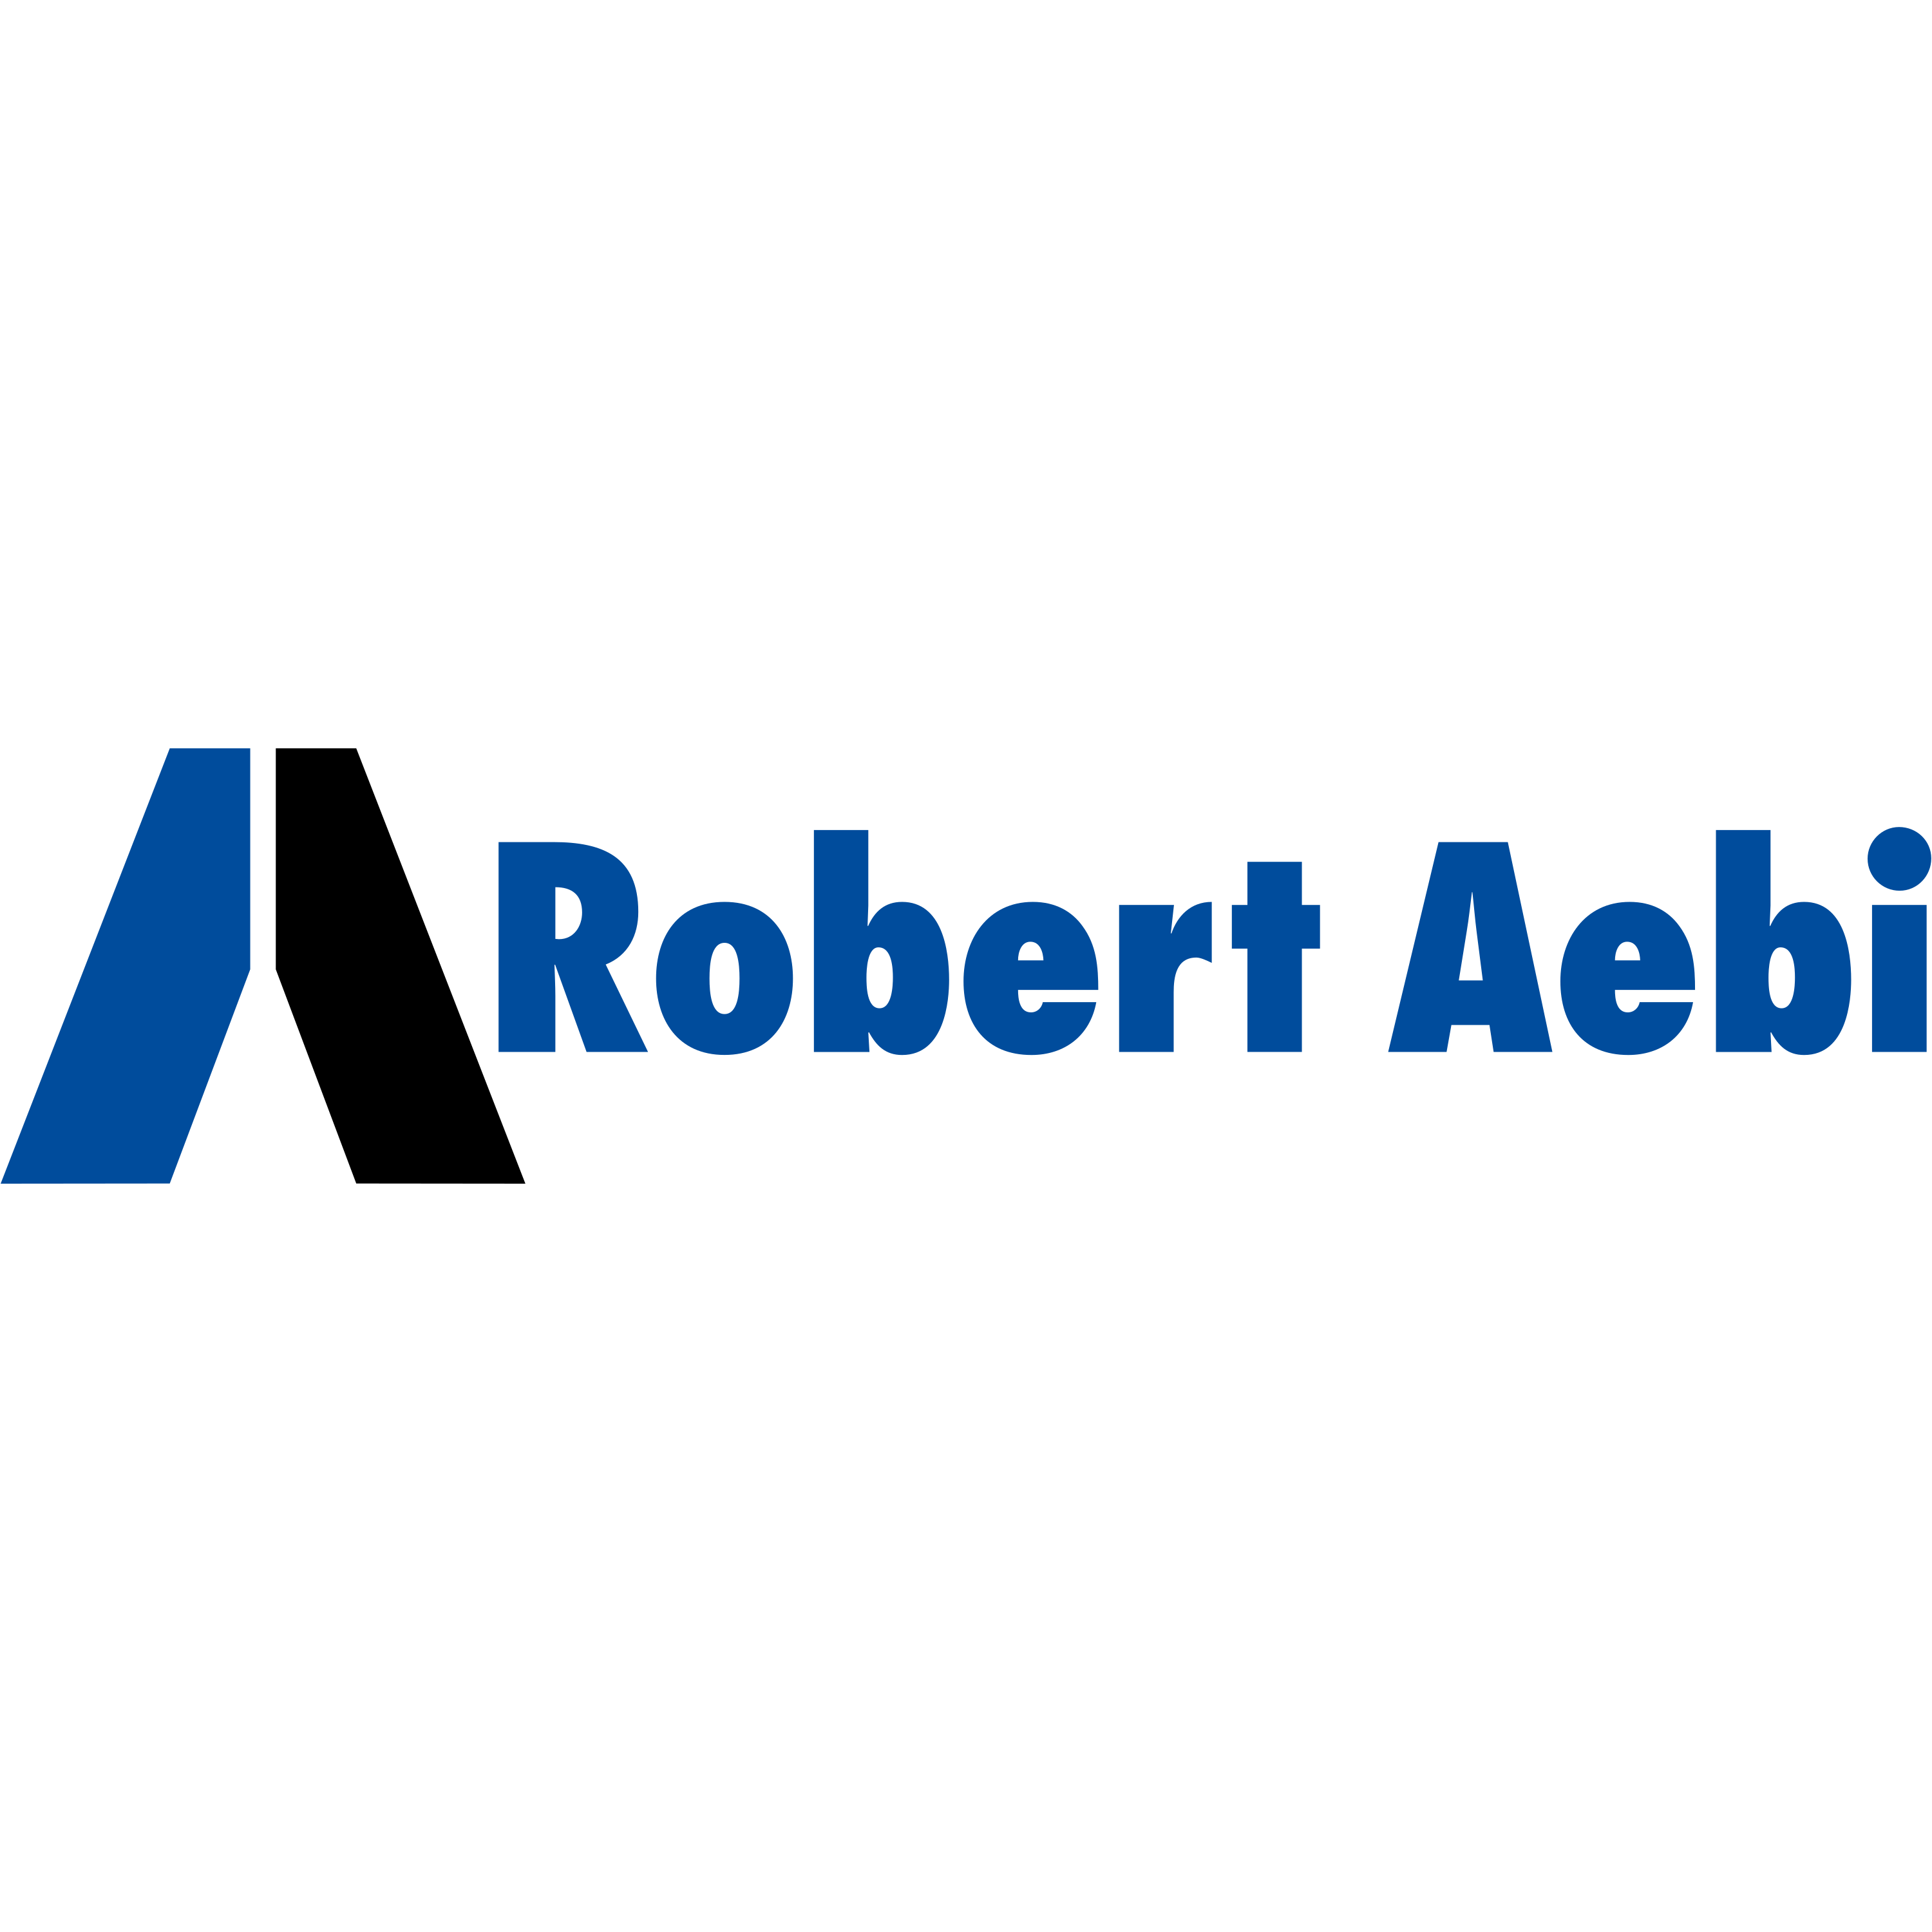 Rober Aebi Logo  Transparent Image